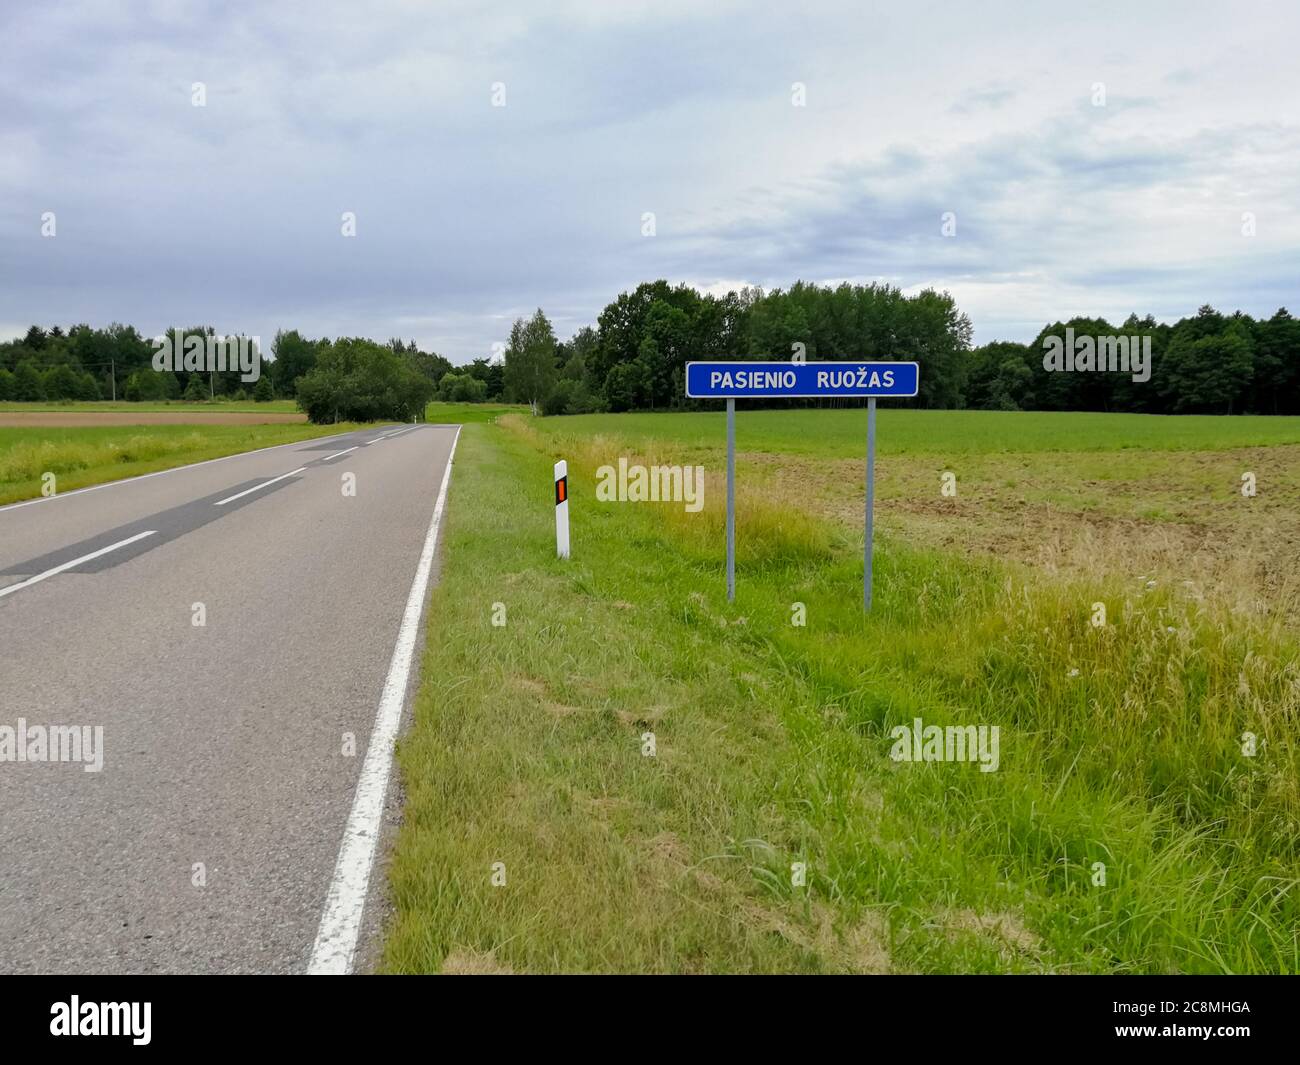 Cartello stradale del confine di stato scritto in lituano "Pasienio ruozas" Foto Stock